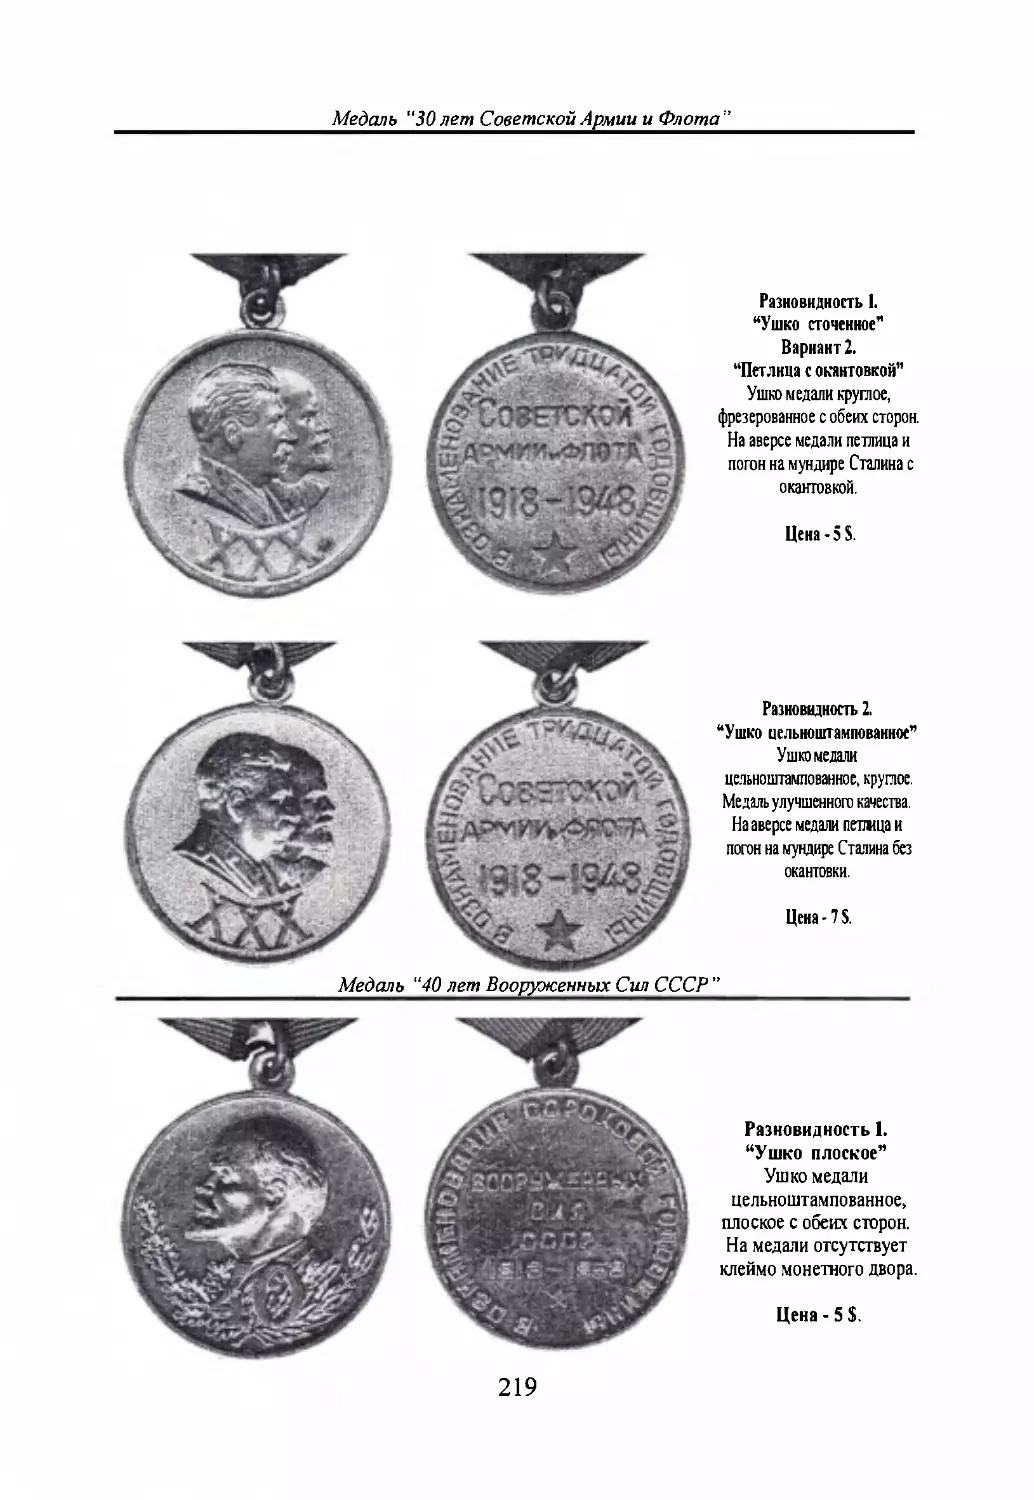 Медаль “30 лет Советской Армии и Флота”
Медаль “40 лет Вооруженным Силам СССР”